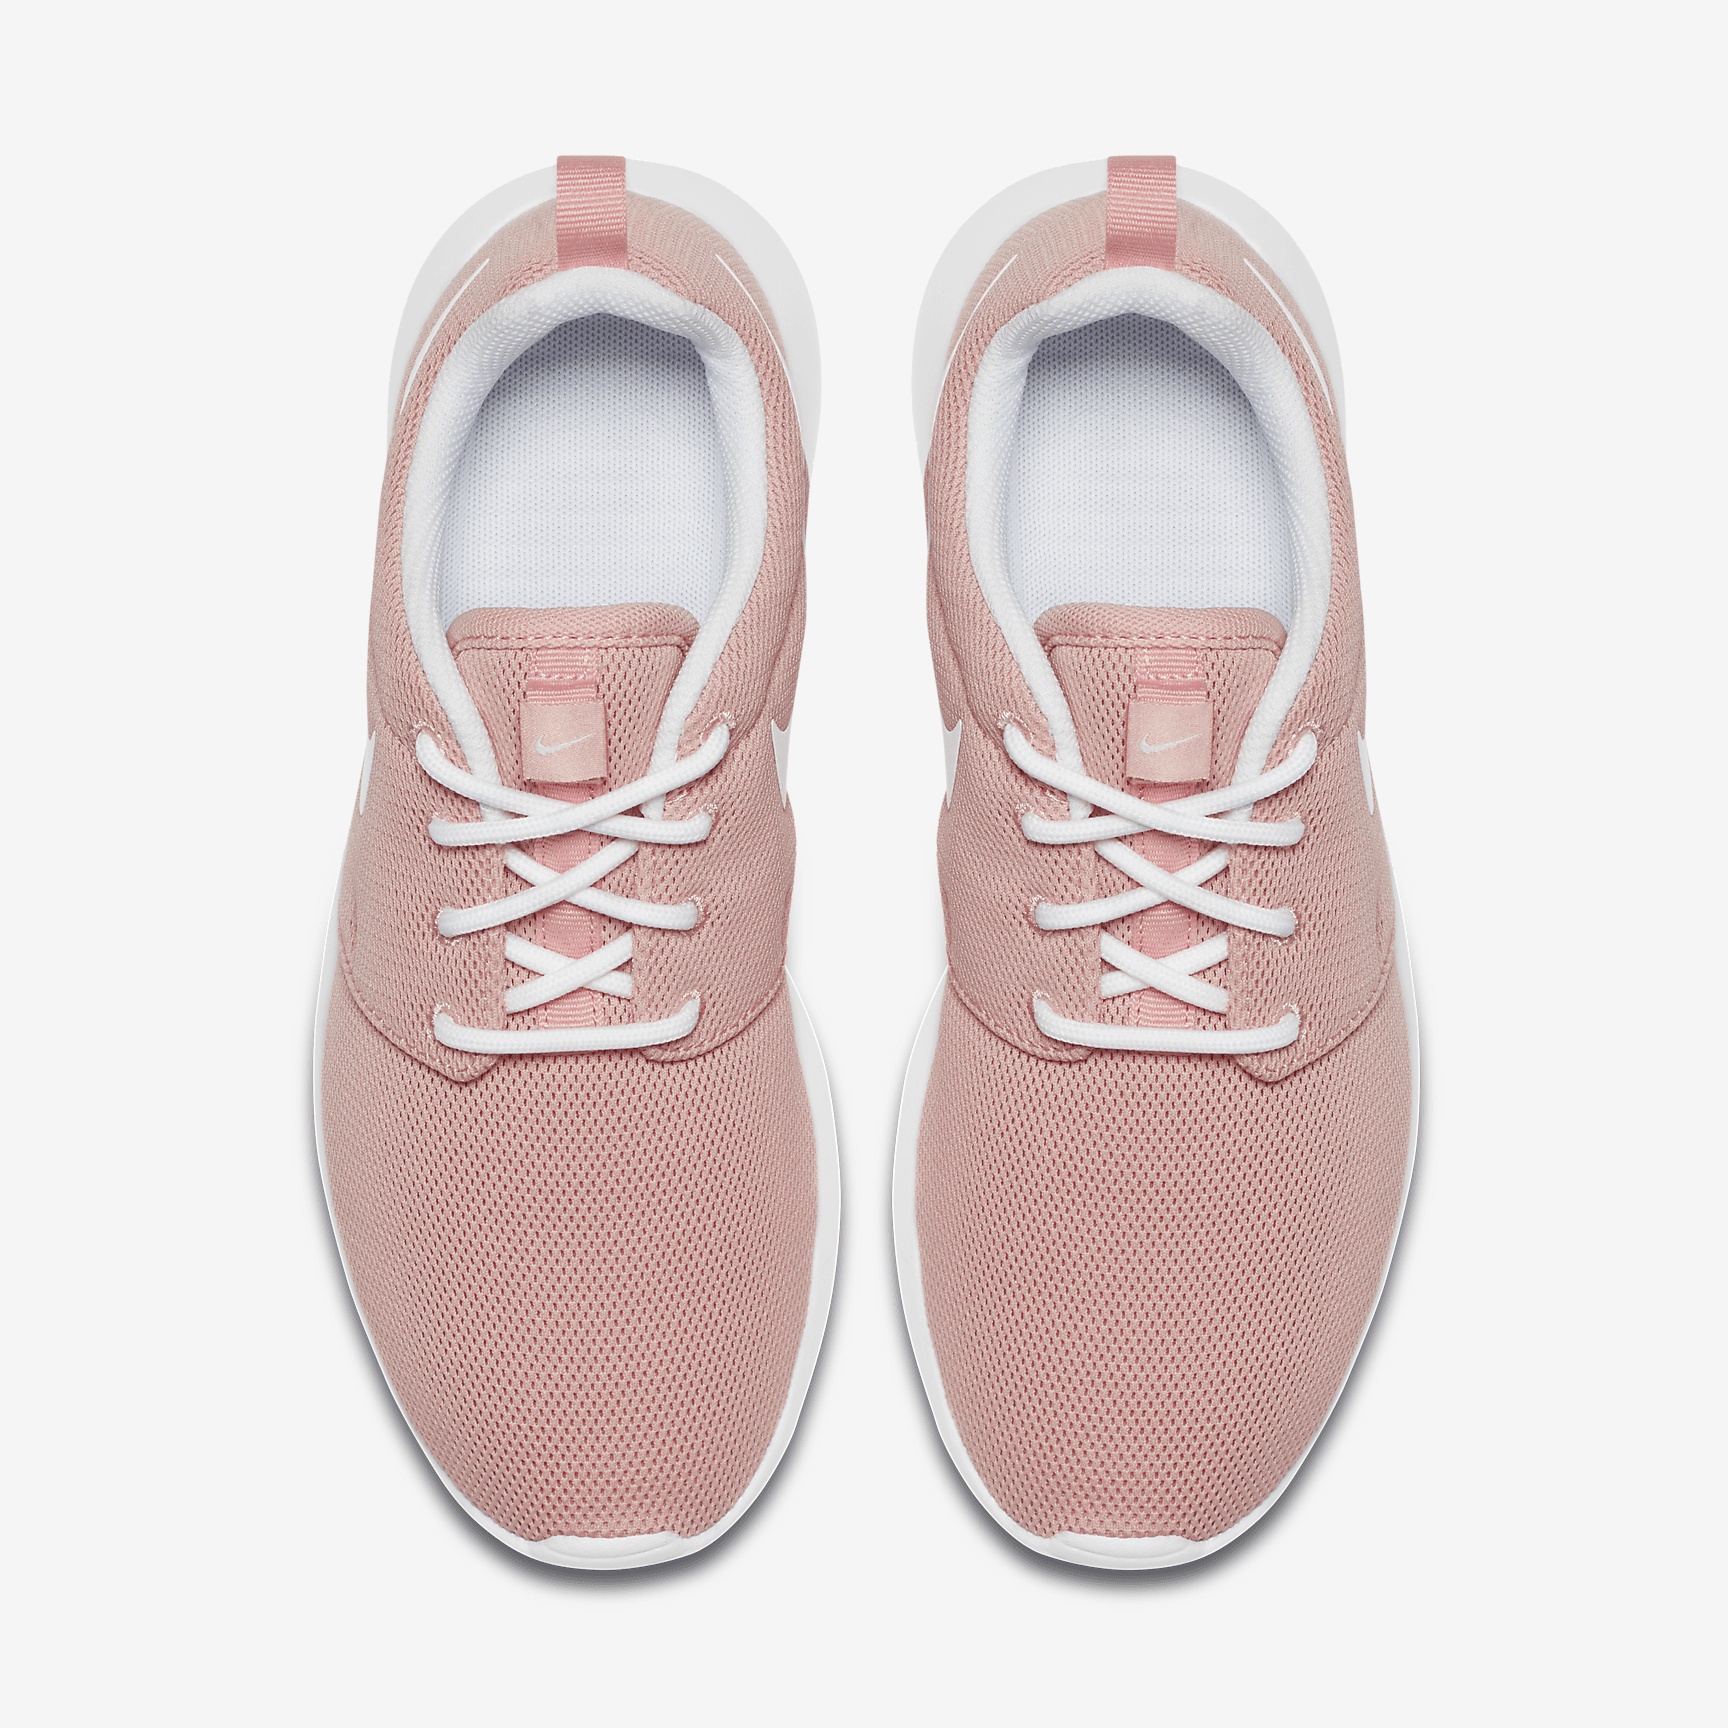 Nike Women's Roshe One Shoes - 4